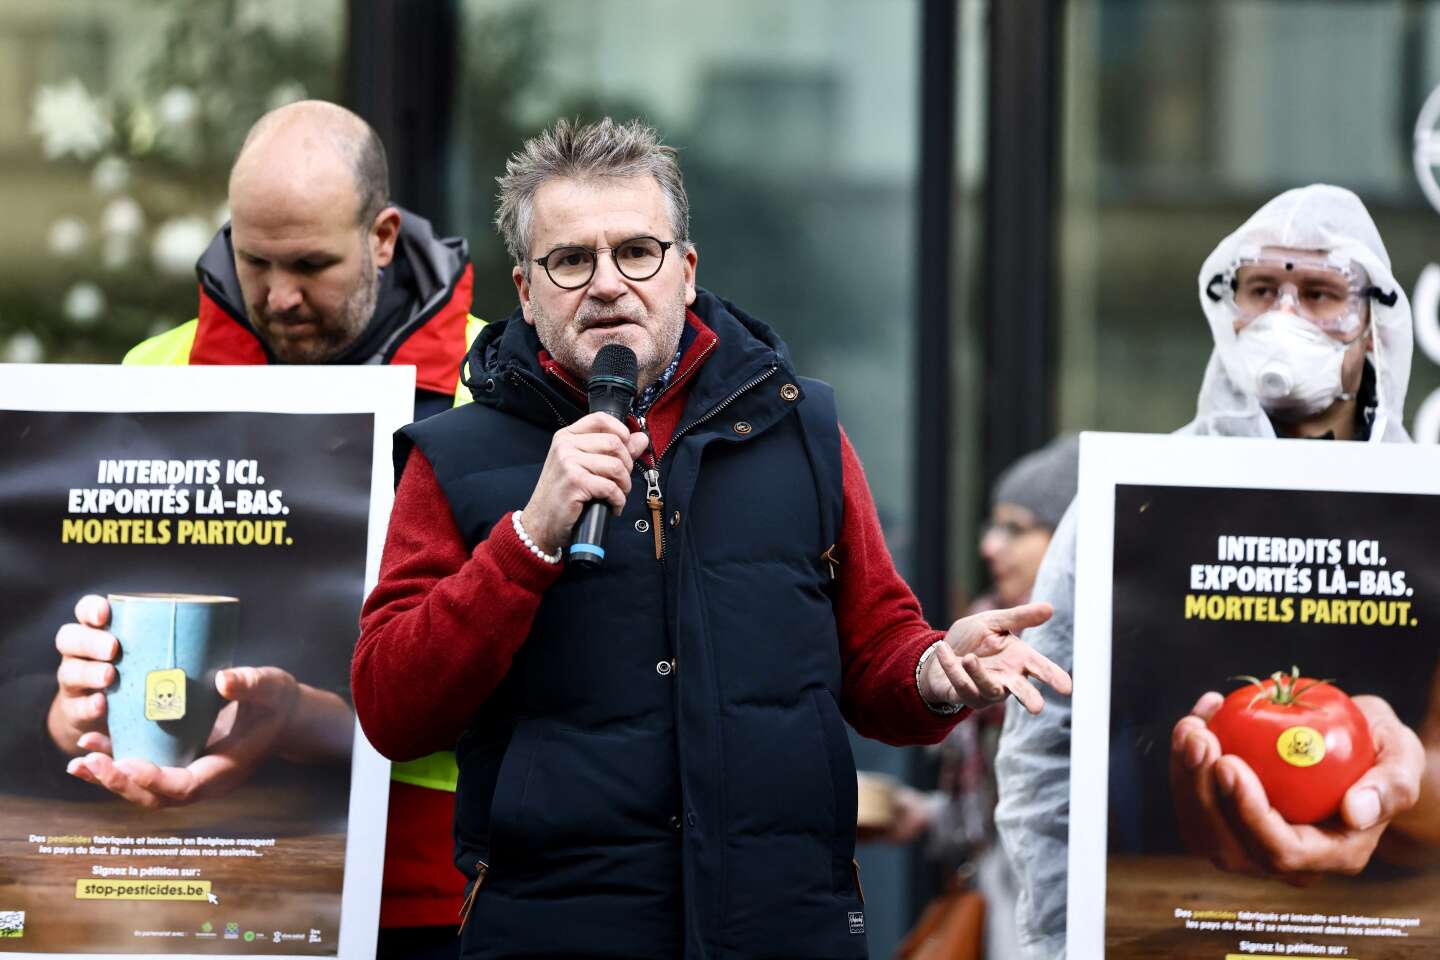 Agression de Paul François, l’agriculteur qui a fait condamner Monsanto, le parquet ouvre une enquête pour « violences en réunion »